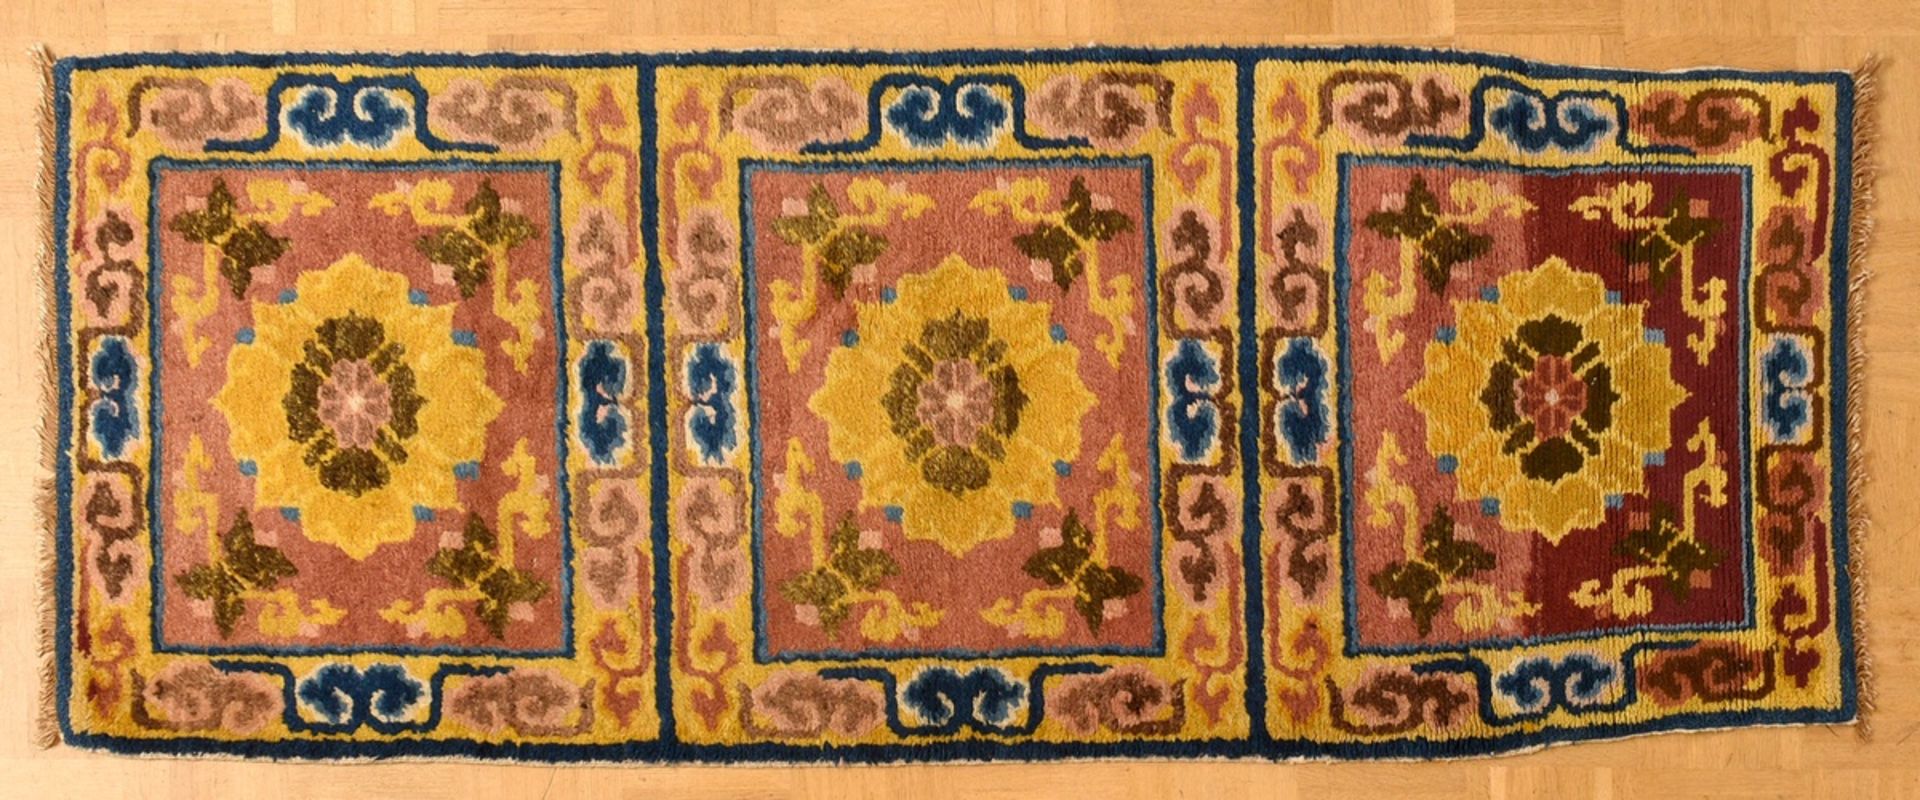 Tibetischer Khagangma Sitzteppich "Blüten und florale Ornamente" auf gelb-braunem Feld, um 1920, Wo - Bild 3 aus 7